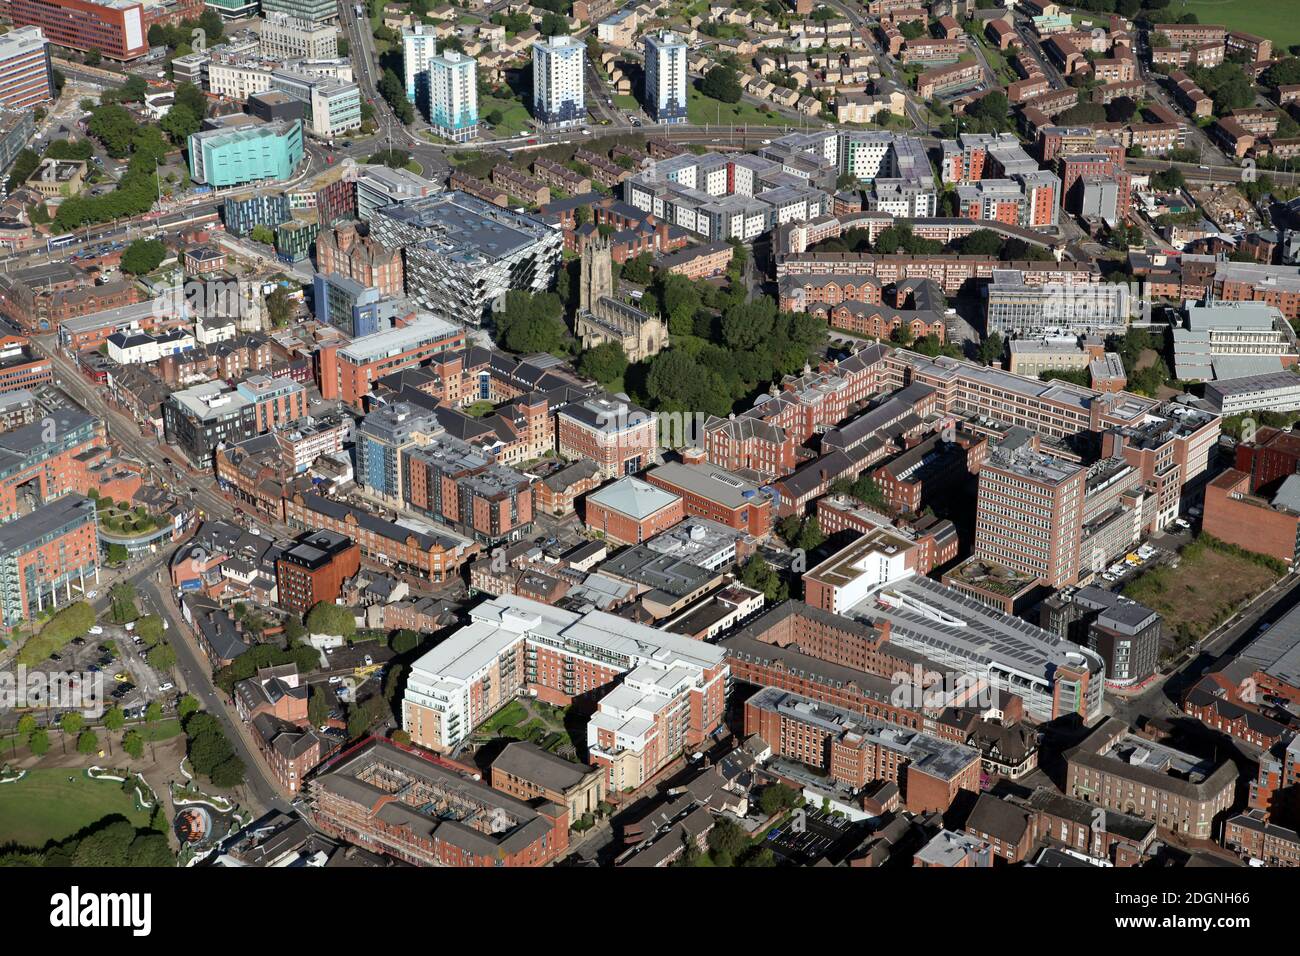 Vue aérienne sur West Street, vers le nord-ouest en direction de divers bâtiments de l'université de Sheffield et du parc Saint George's Square, Sheffield, Royaume-Uni Banque D'Images